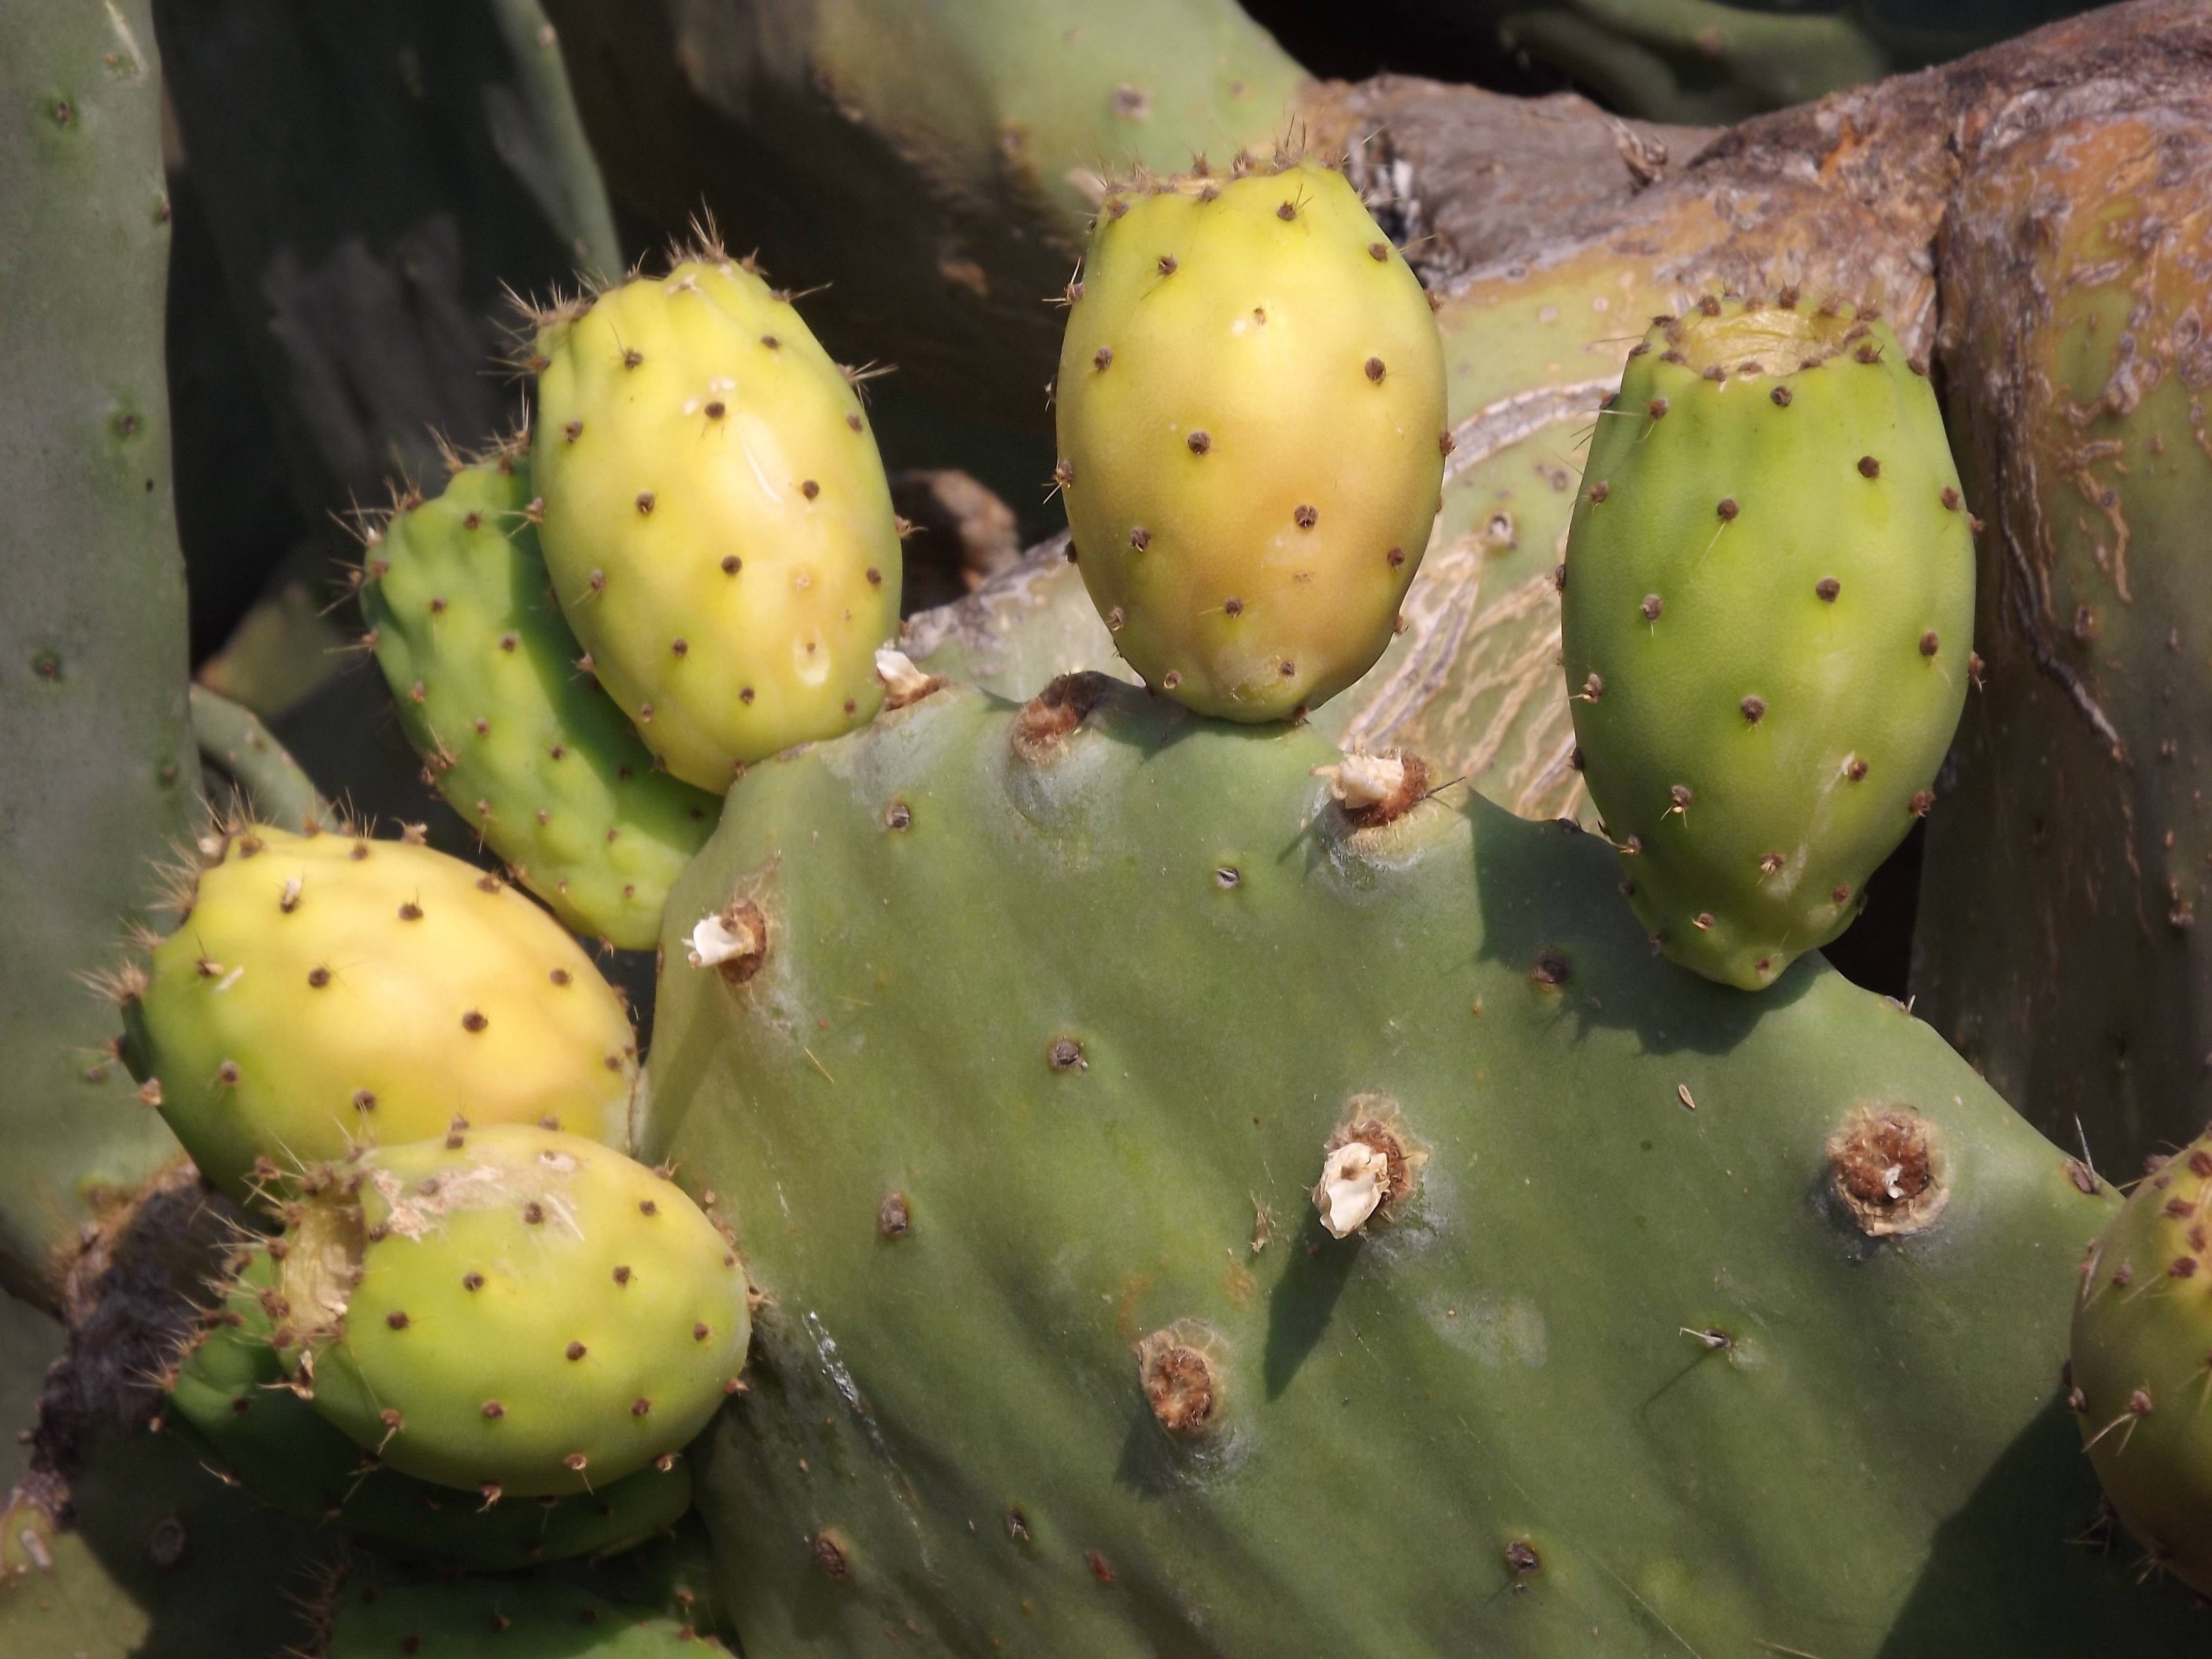 Домашний кактус опунция – уход, описание виды и размножение